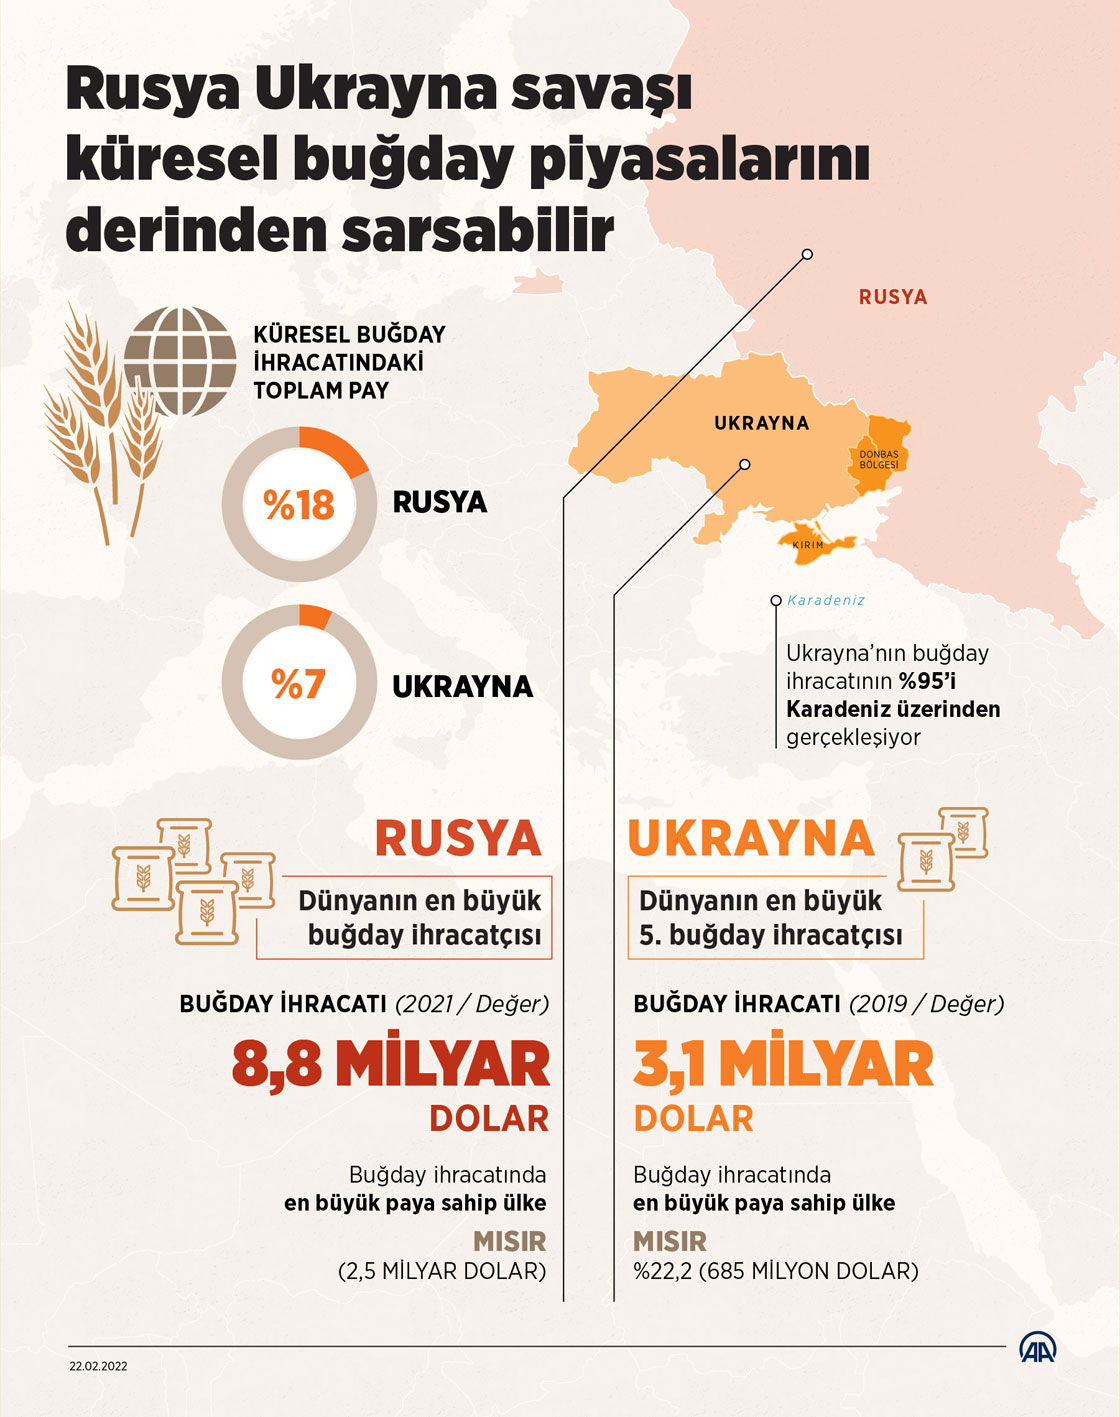 Rusya ile Ukrayna arasındaki savaş küresel buğday piyasalarını derinden sarsabilir